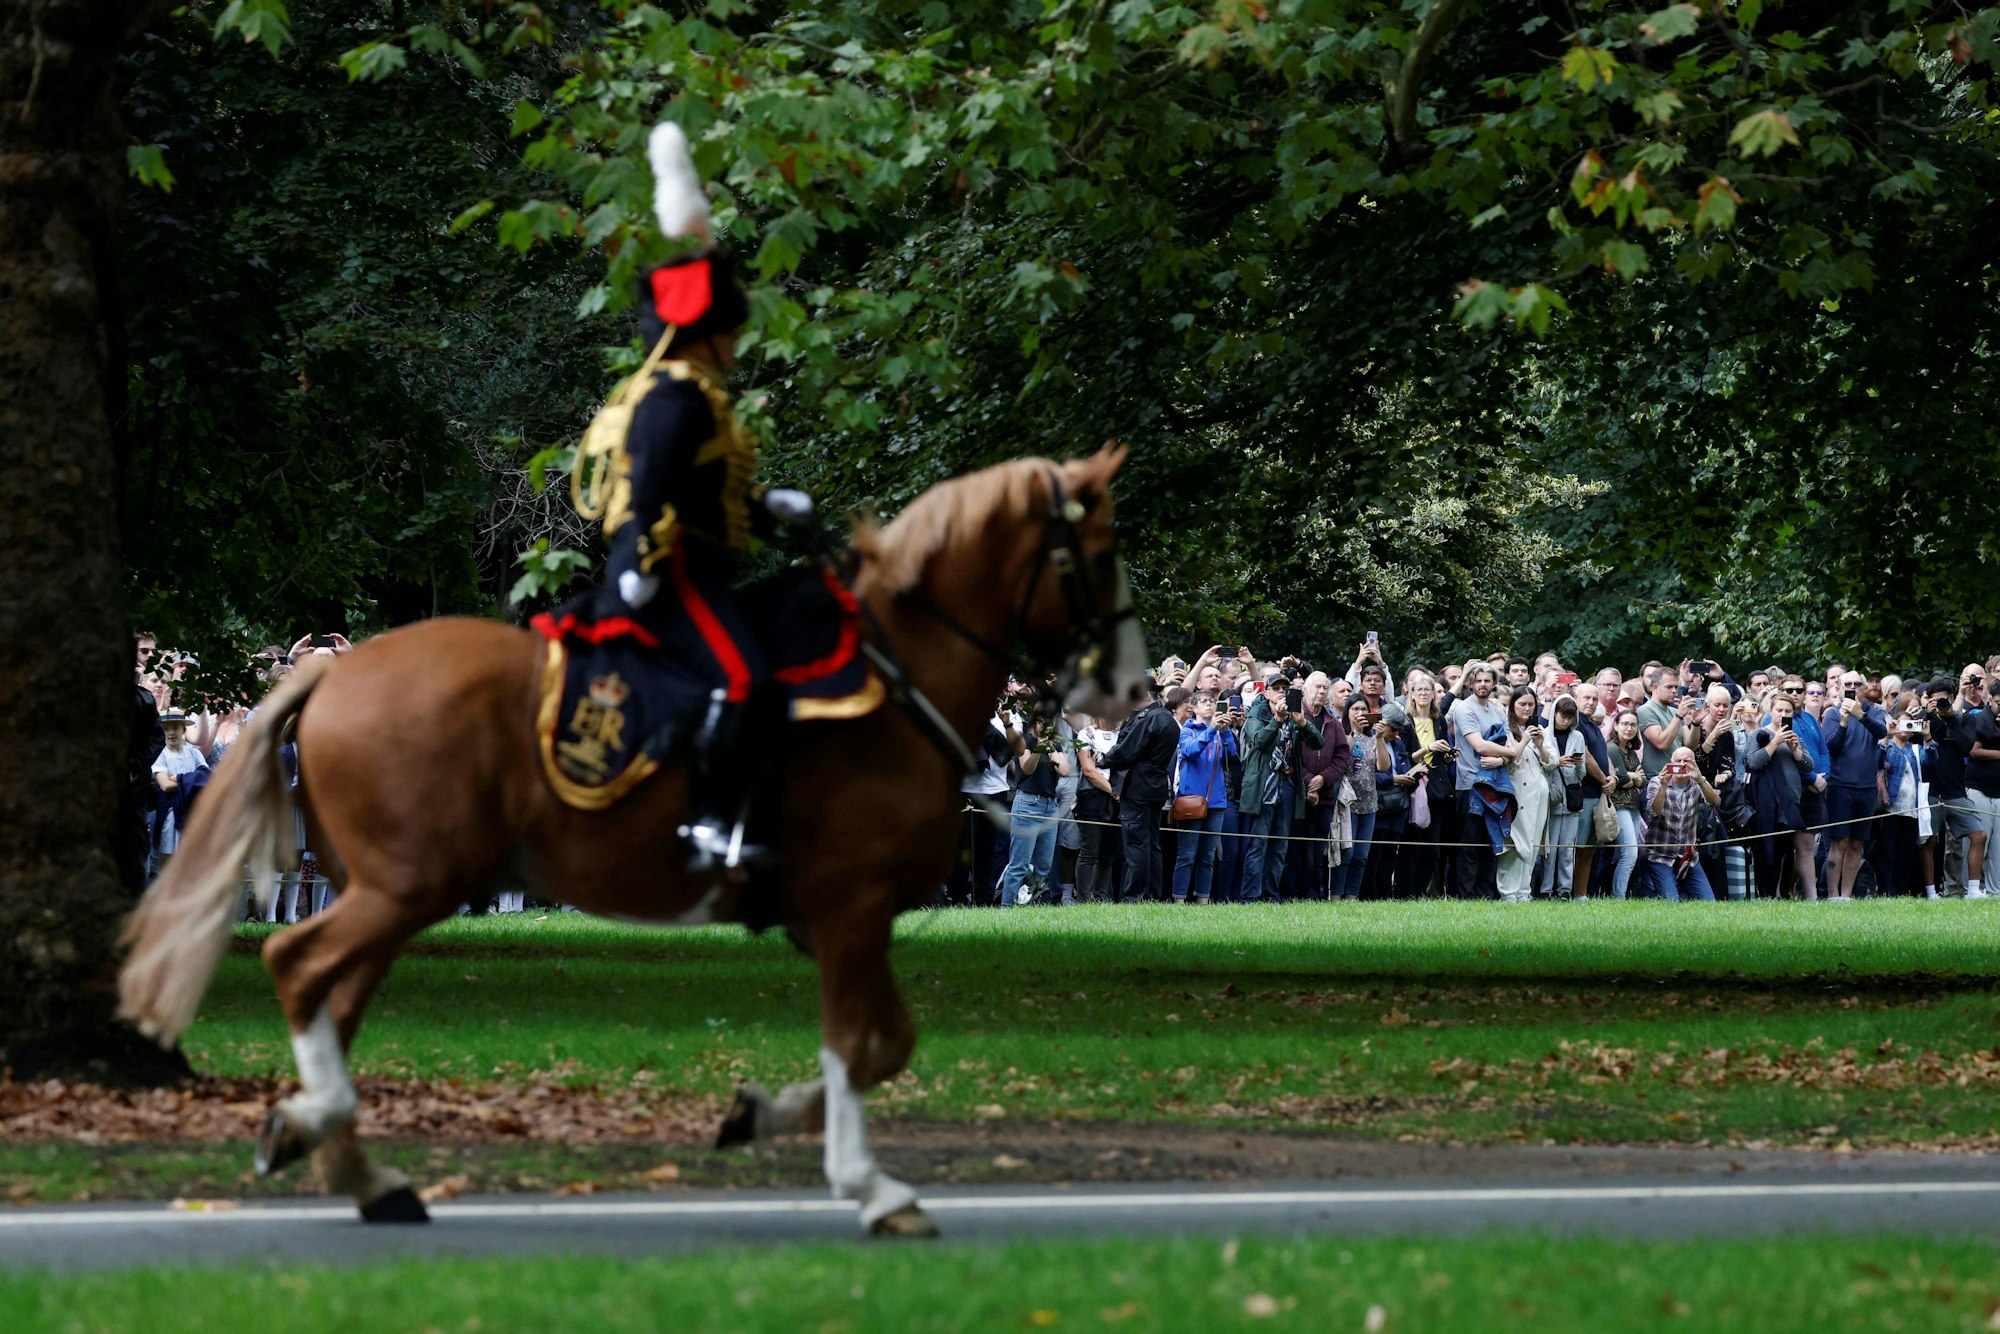 Die Artillerie der britischen Armee trifft am 9. September 2022 im Hyde Park in London ein, um den Salut der Todeskanone anlässlich des Todes von Königin Elisabeth II. abzufeuern. 96 Schuss werden abgefeuert, ein Schuss für jedes Lebensjahr der Königin.